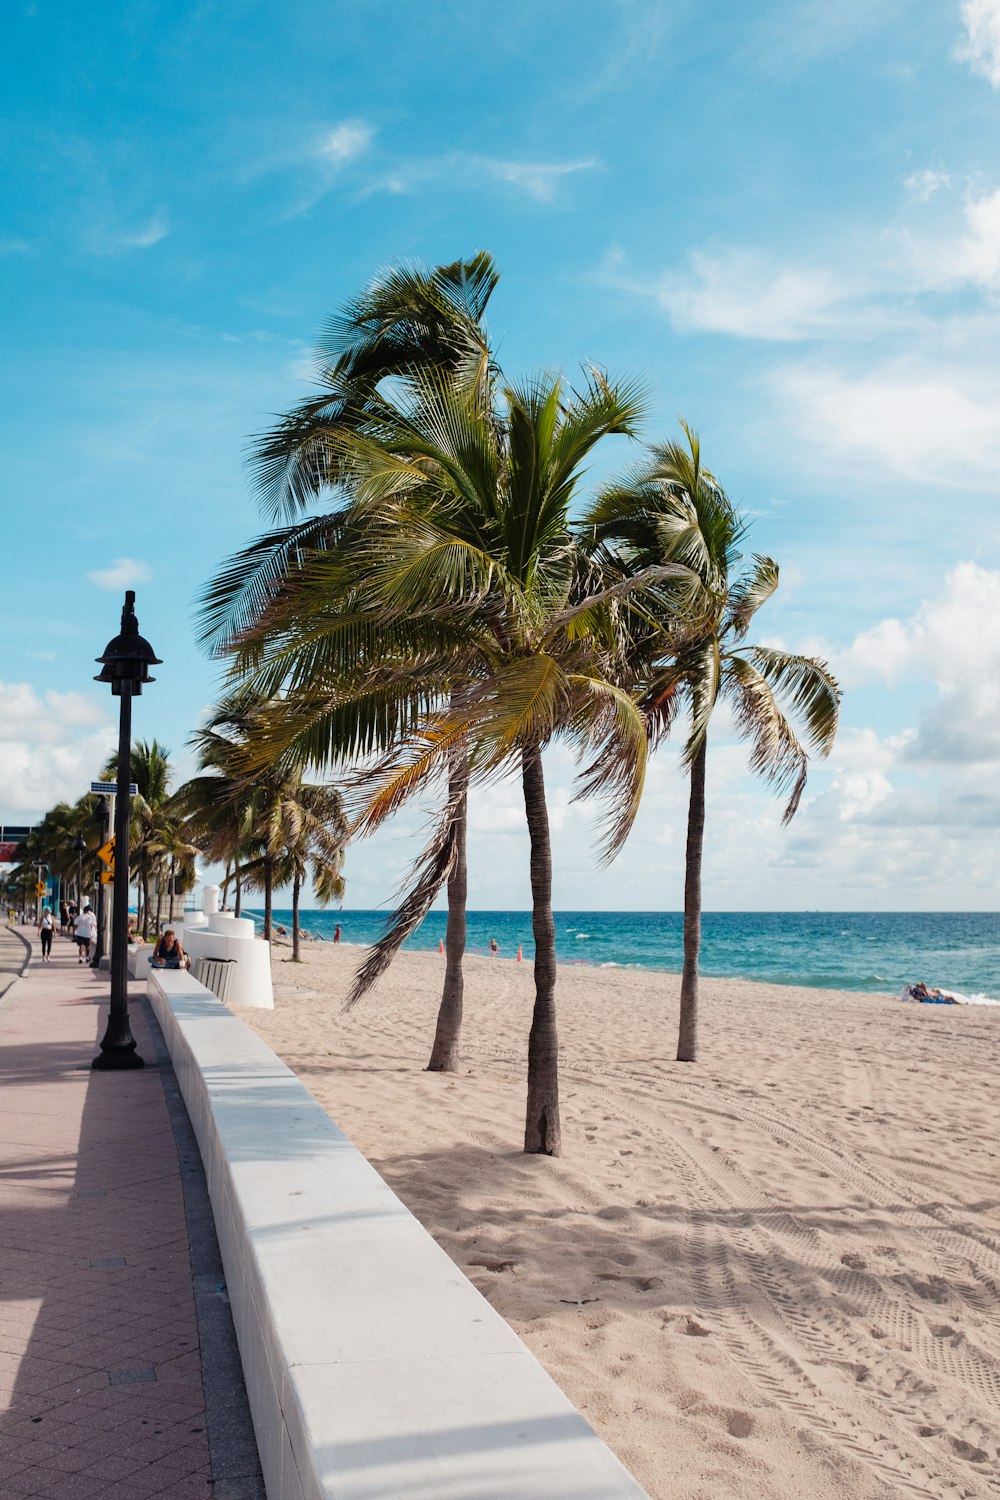 Palmen säumen einen Bürgersteig entlang des Strandes